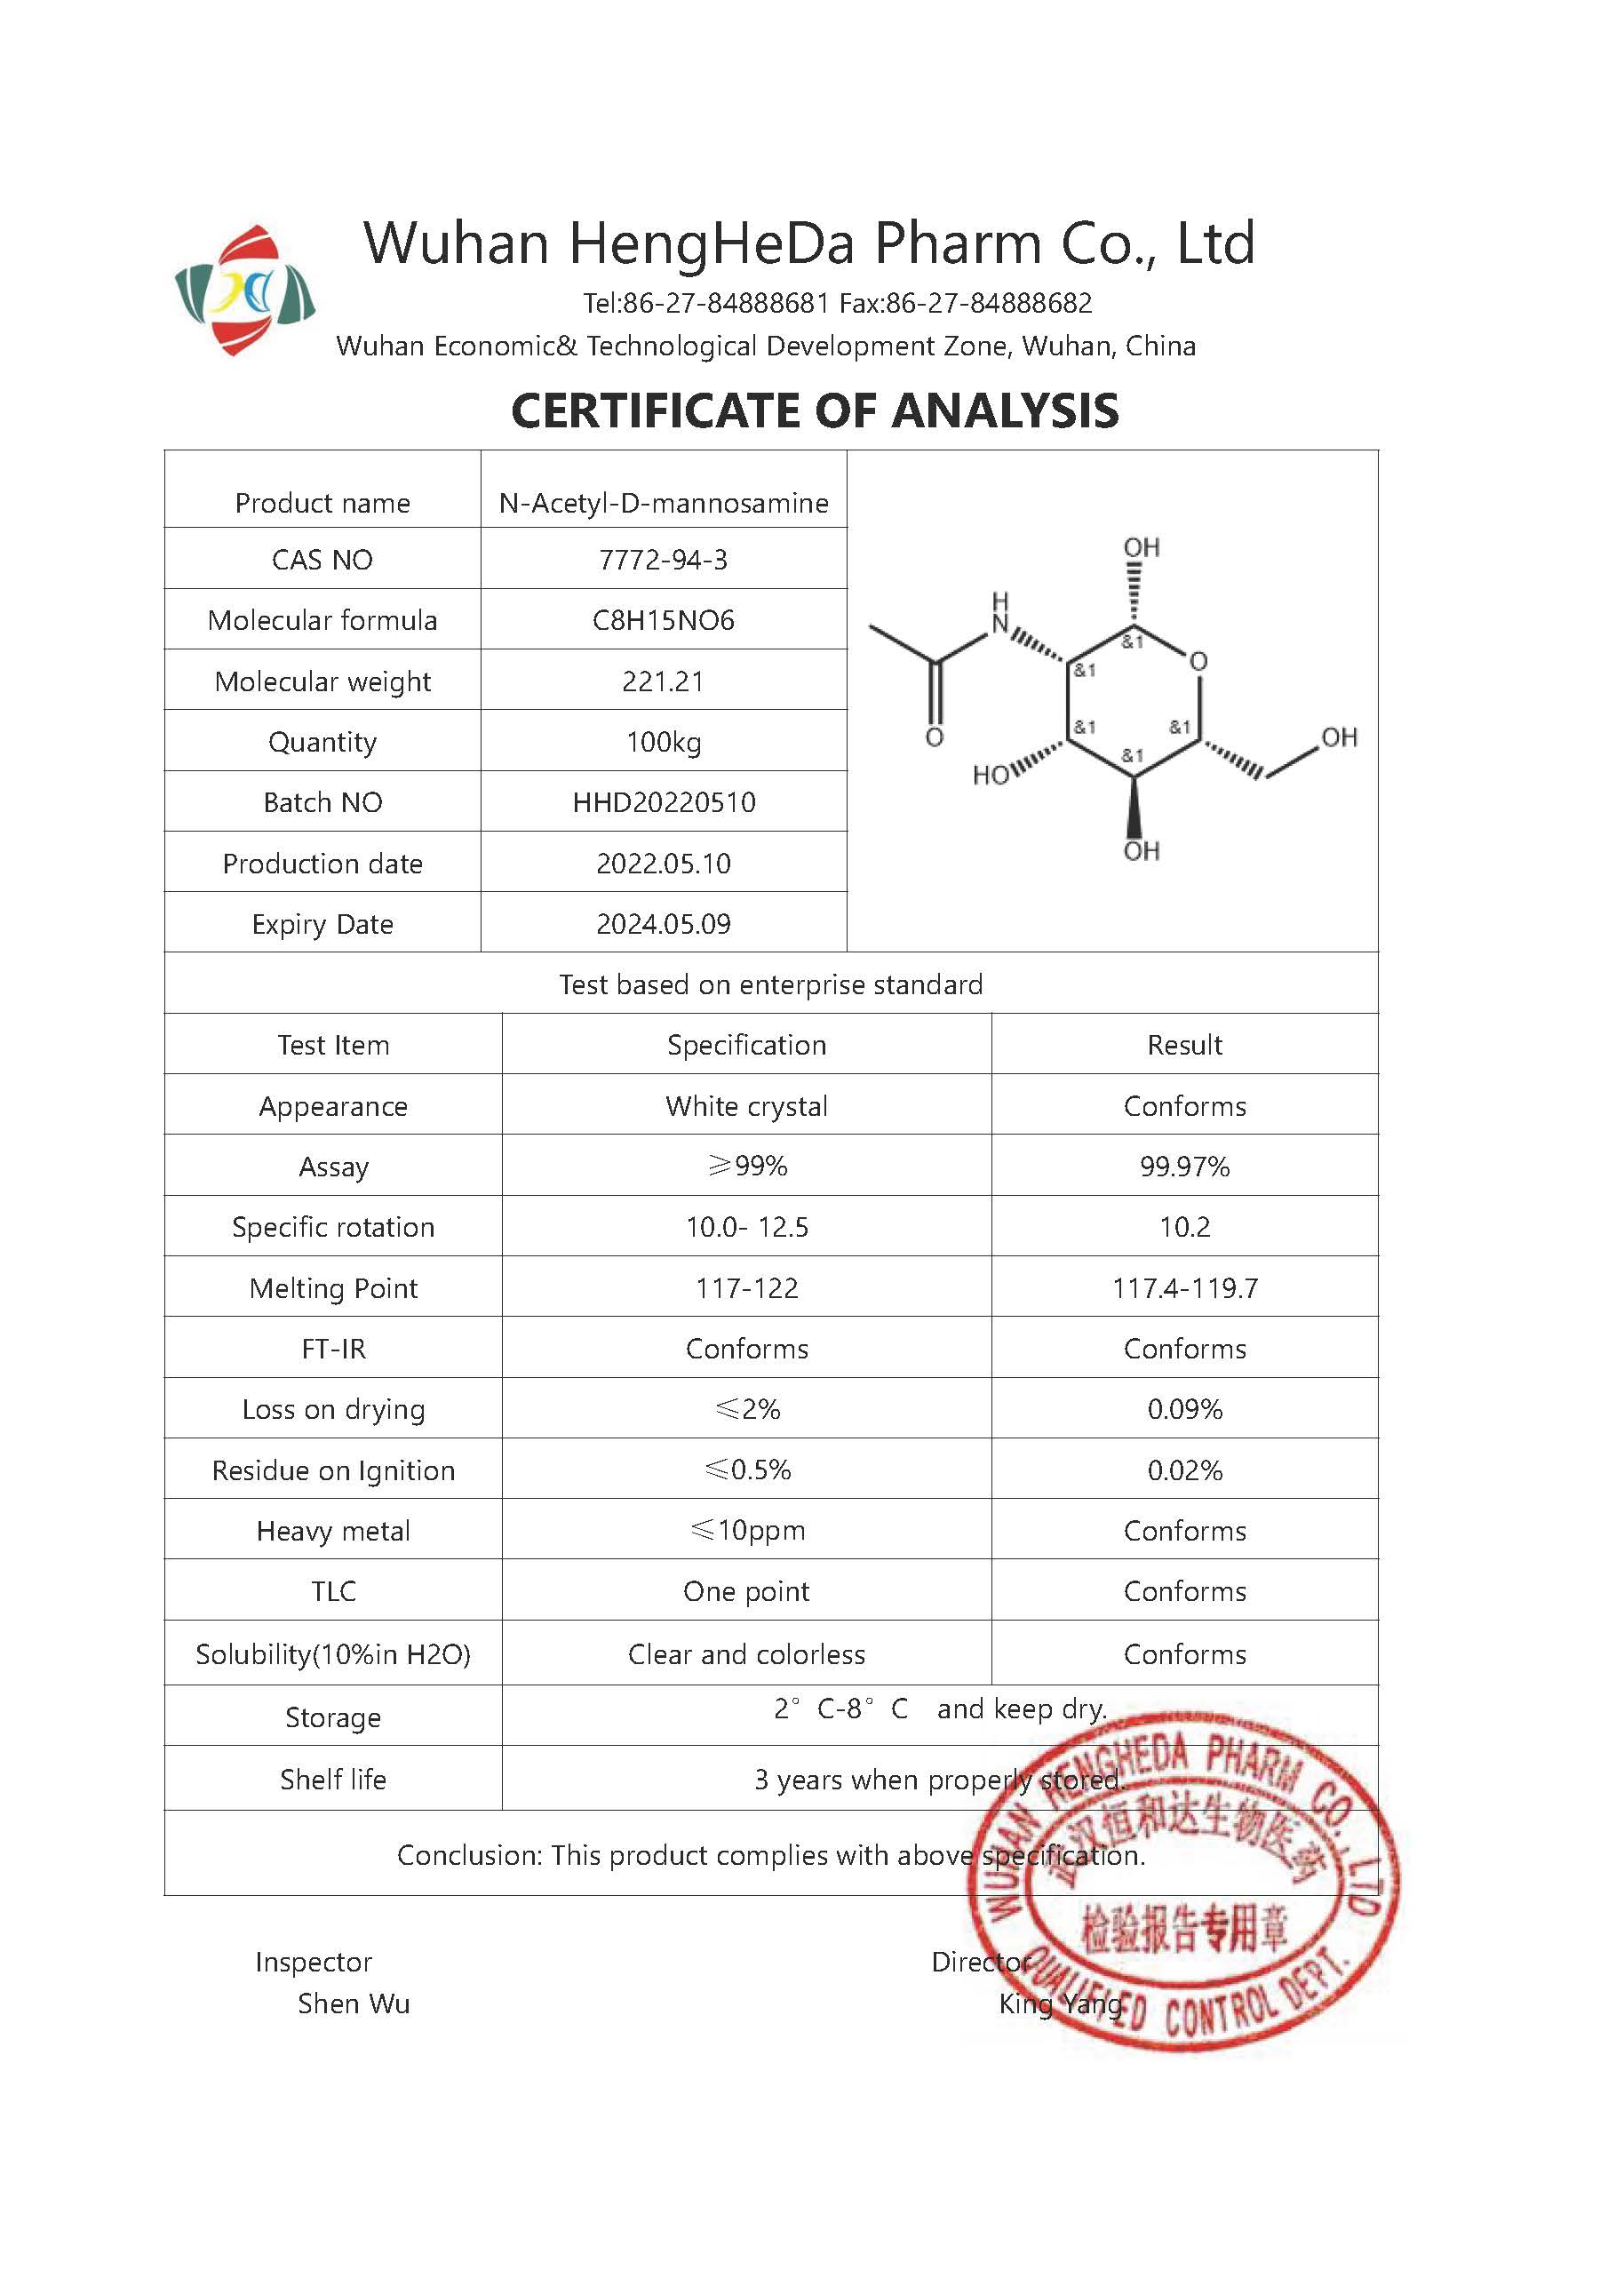 Acheter N-acétyl-D-mannosamine CAS 7772-94-3,N-acétyl-D-mannosamine CAS 7772-94-3 Prix,N-acétyl-D-mannosamine CAS 7772-94-3 Marques,N-acétyl-D-mannosamine CAS 7772-94-3 Fabricant,N-acétyl-D-mannosamine CAS 7772-94-3 Quotes,N-acétyl-D-mannosamine CAS 7772-94-3 Société,